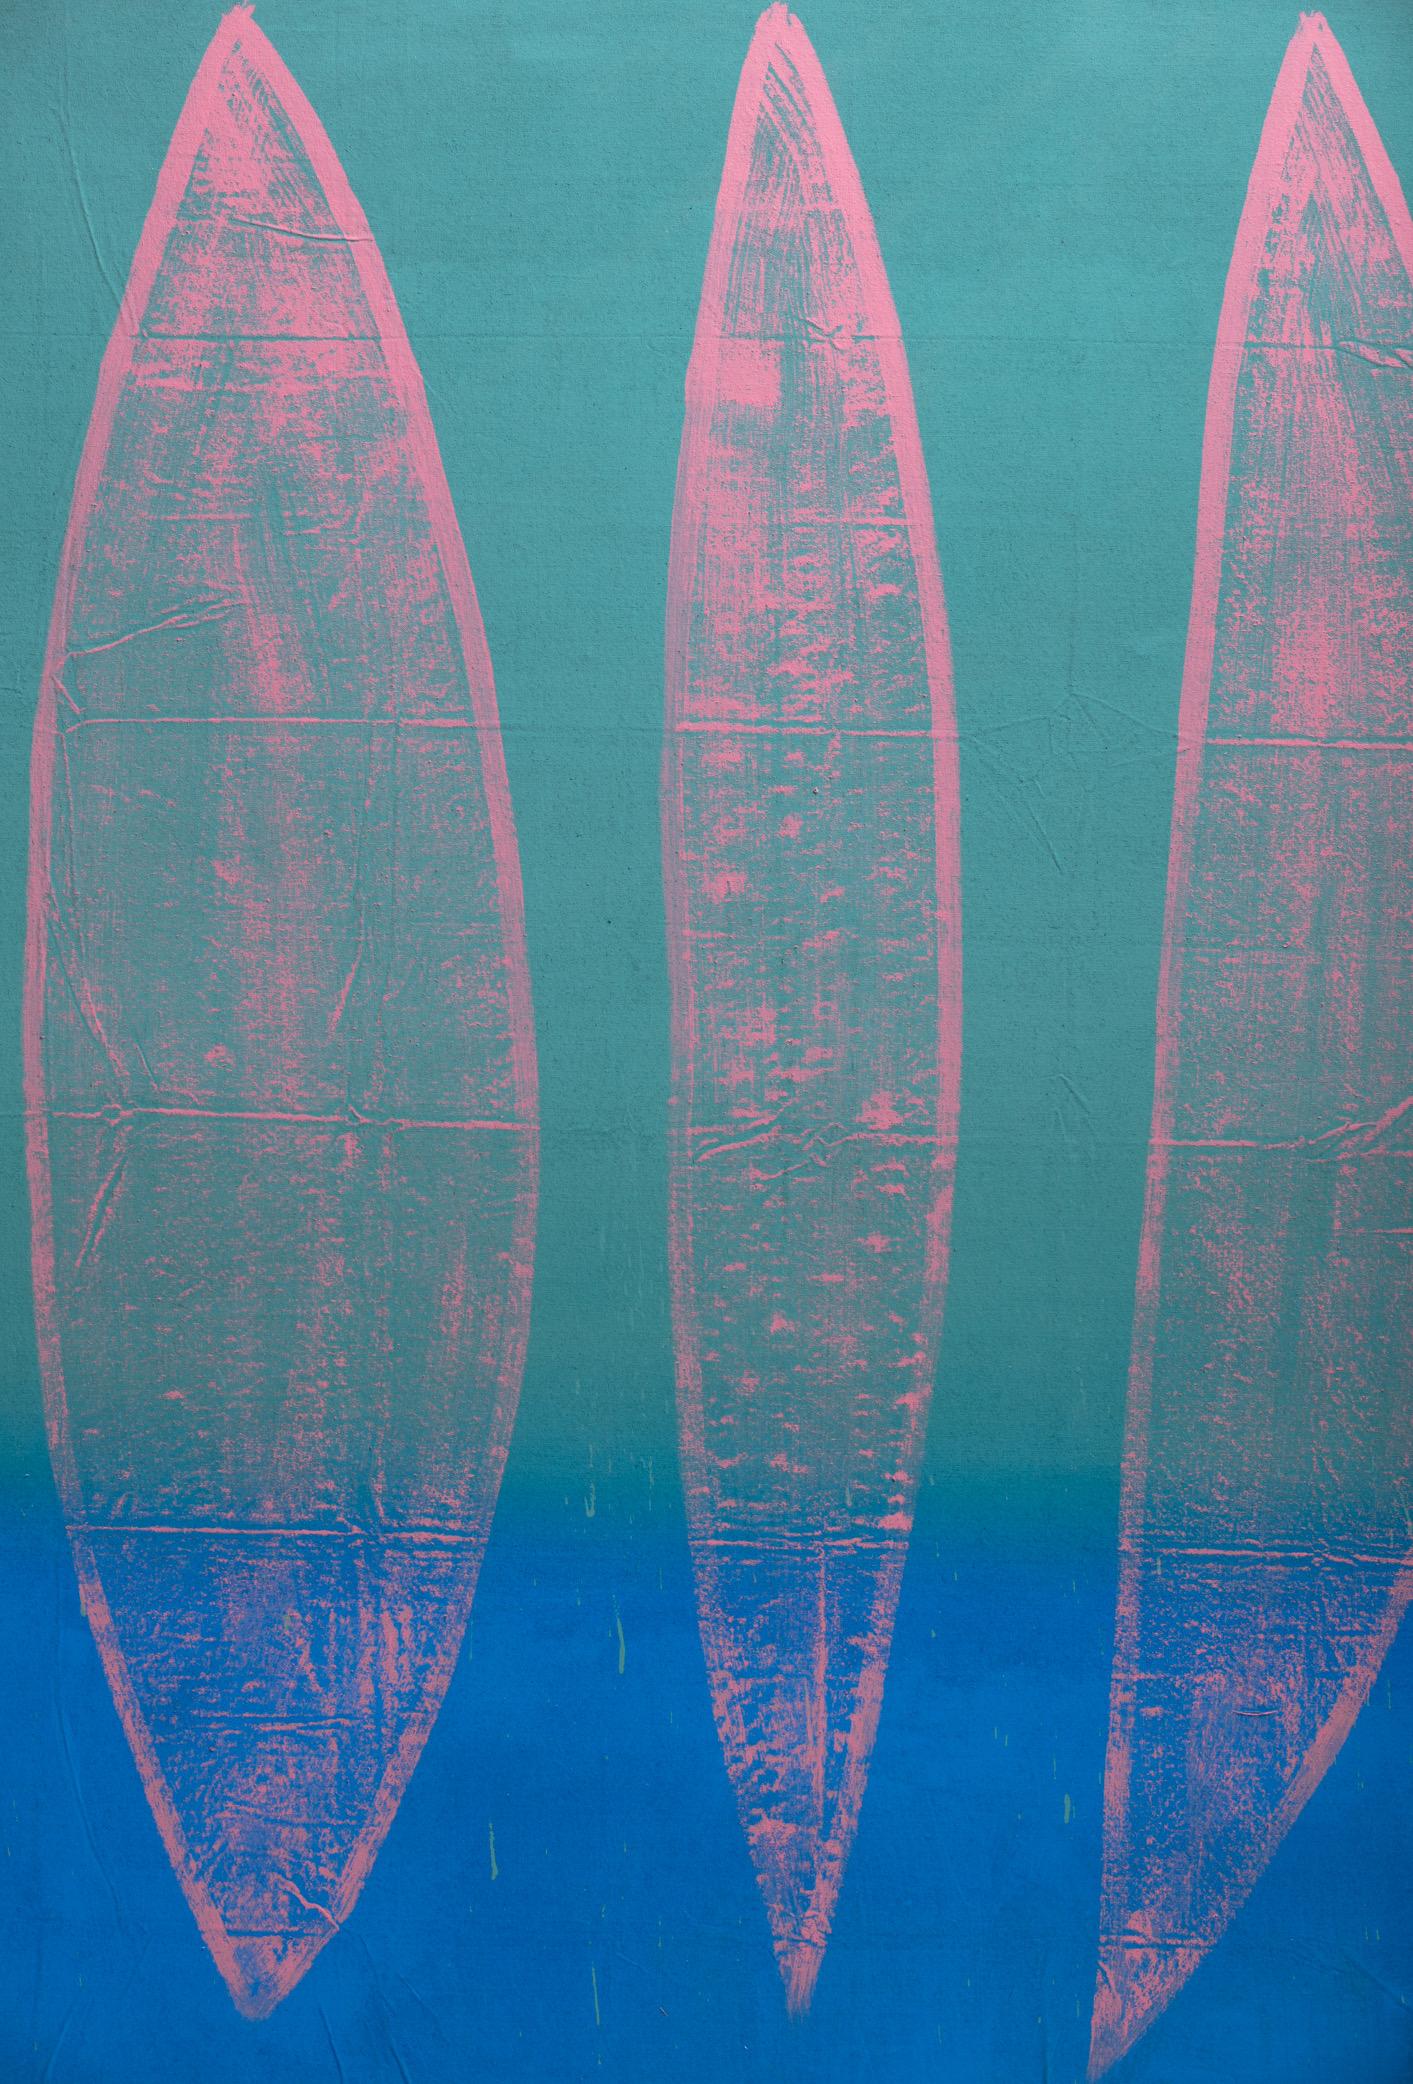 Christopher Ruess großformatiges Gemälde, räumliche Umgebung, blau aufsteigend, eingekapseltes Polymer und Acryl auf Leinwand. Der in Pennsylvania geborene Künstler Chris Ruess studierte später an der Memphis Academy of Arts, dem Memphis College of